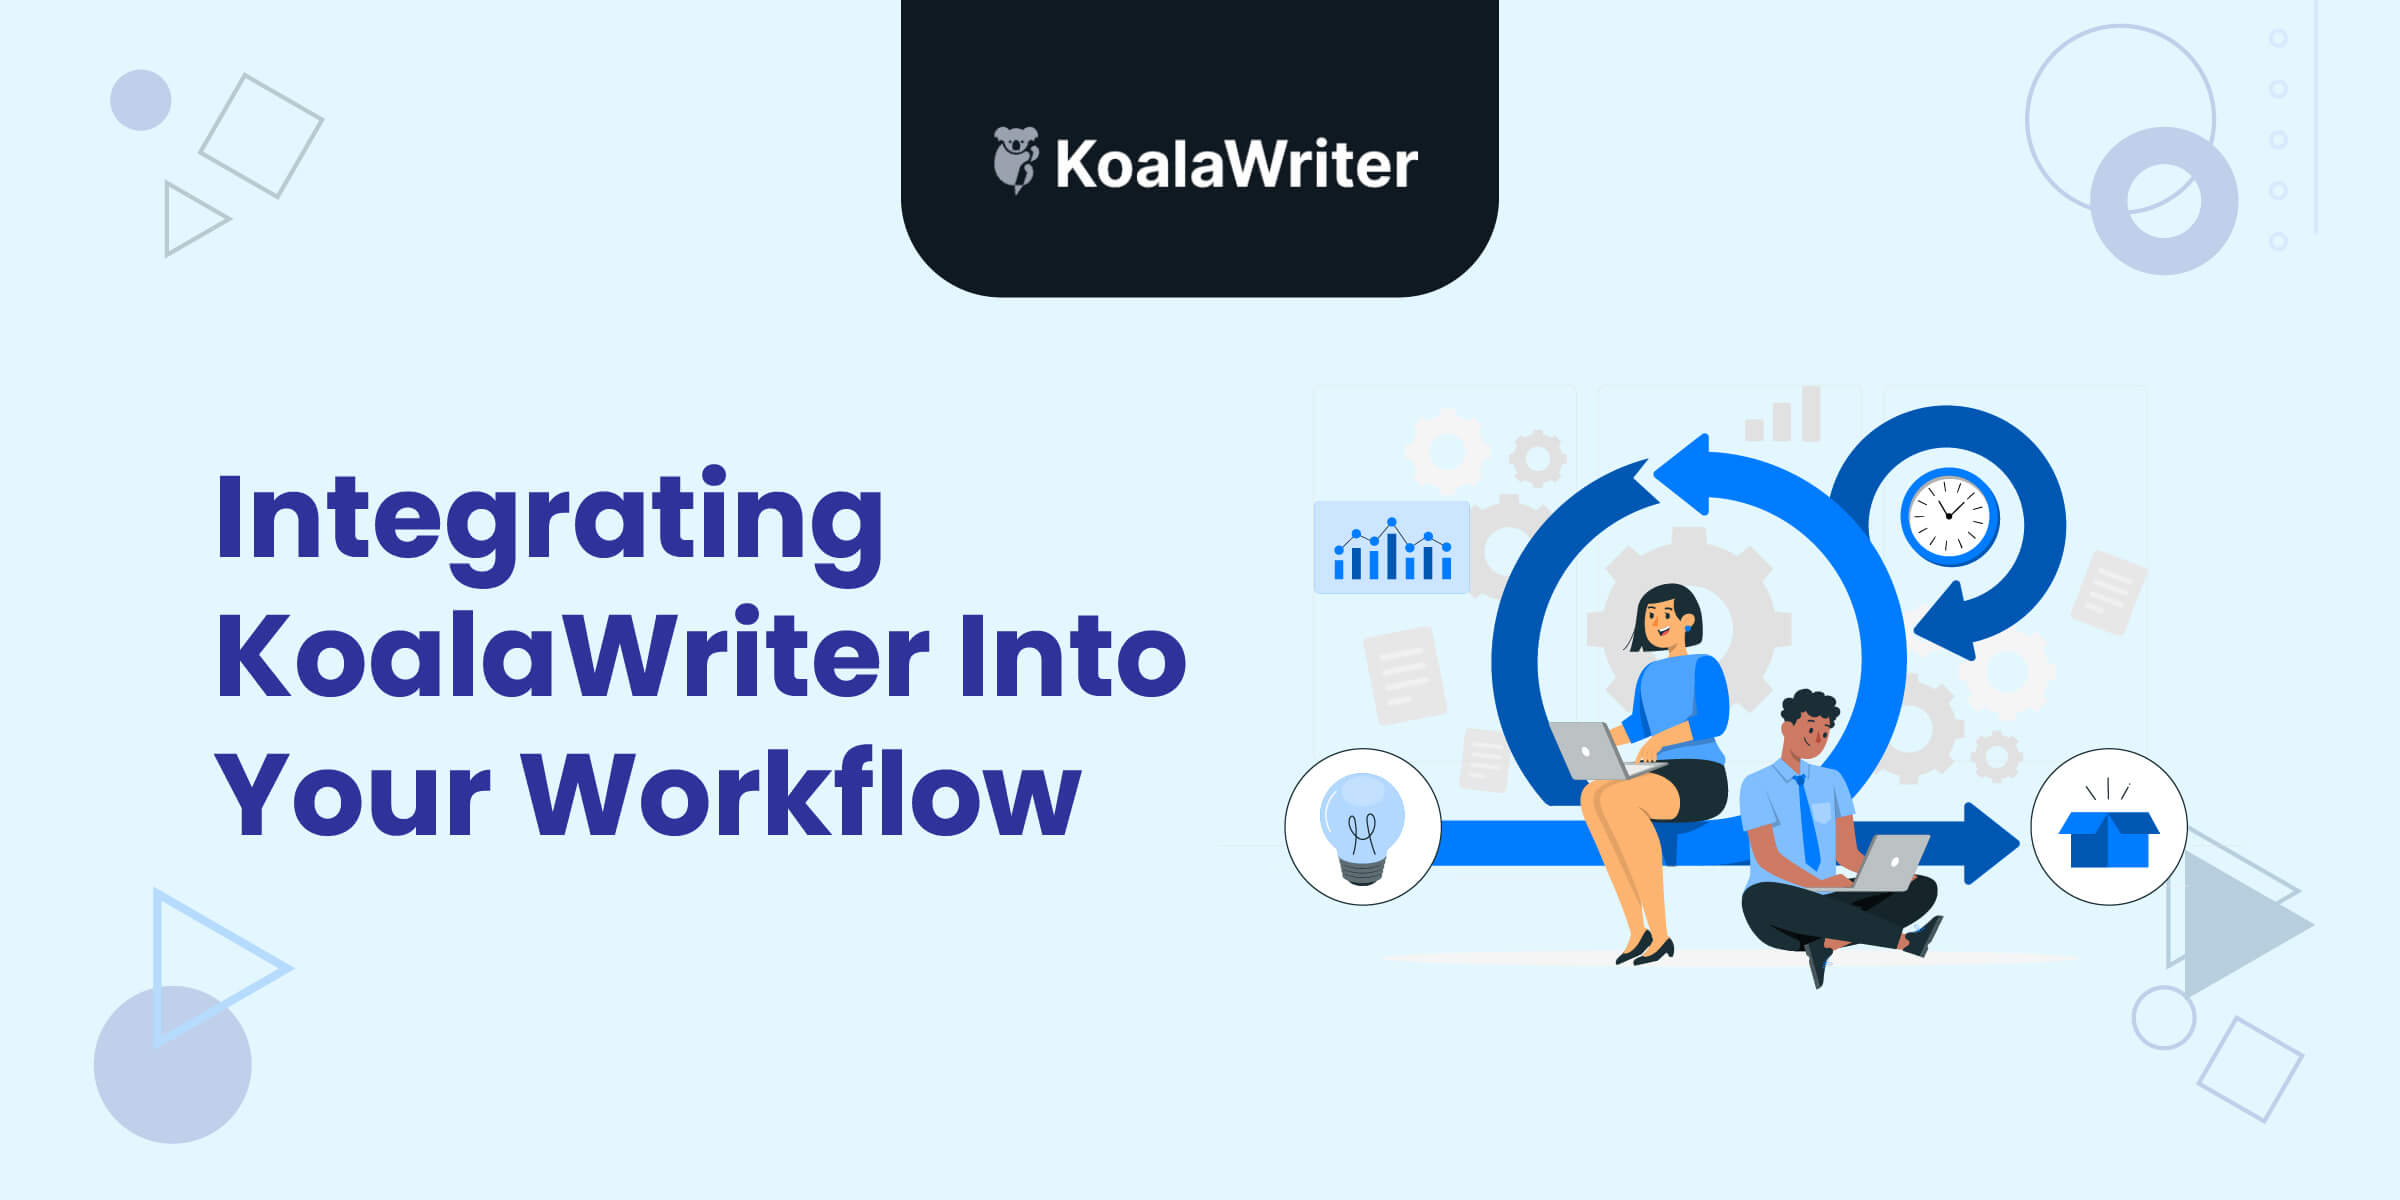 Integrating KoalaWriter into Workflow